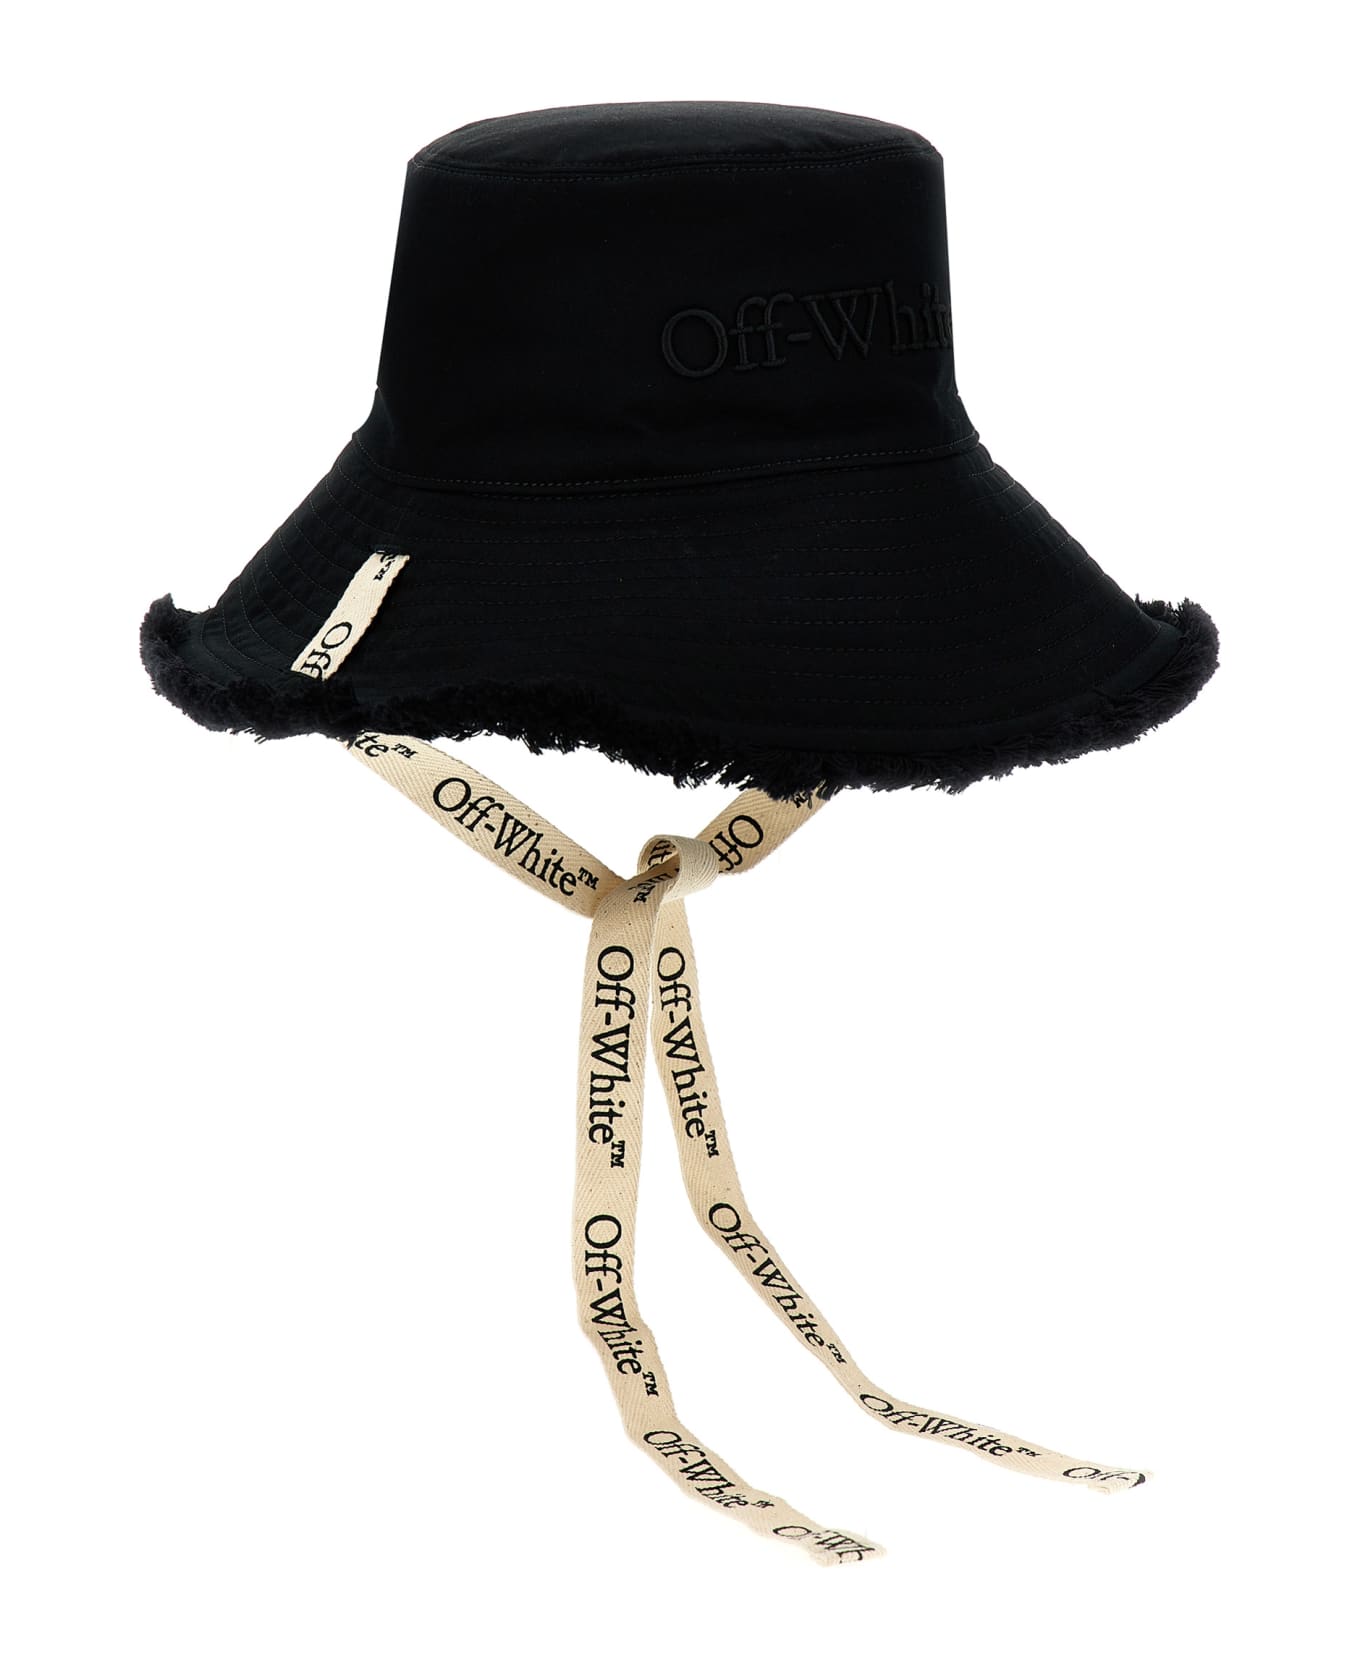 Off-White Bucket Hat - Black